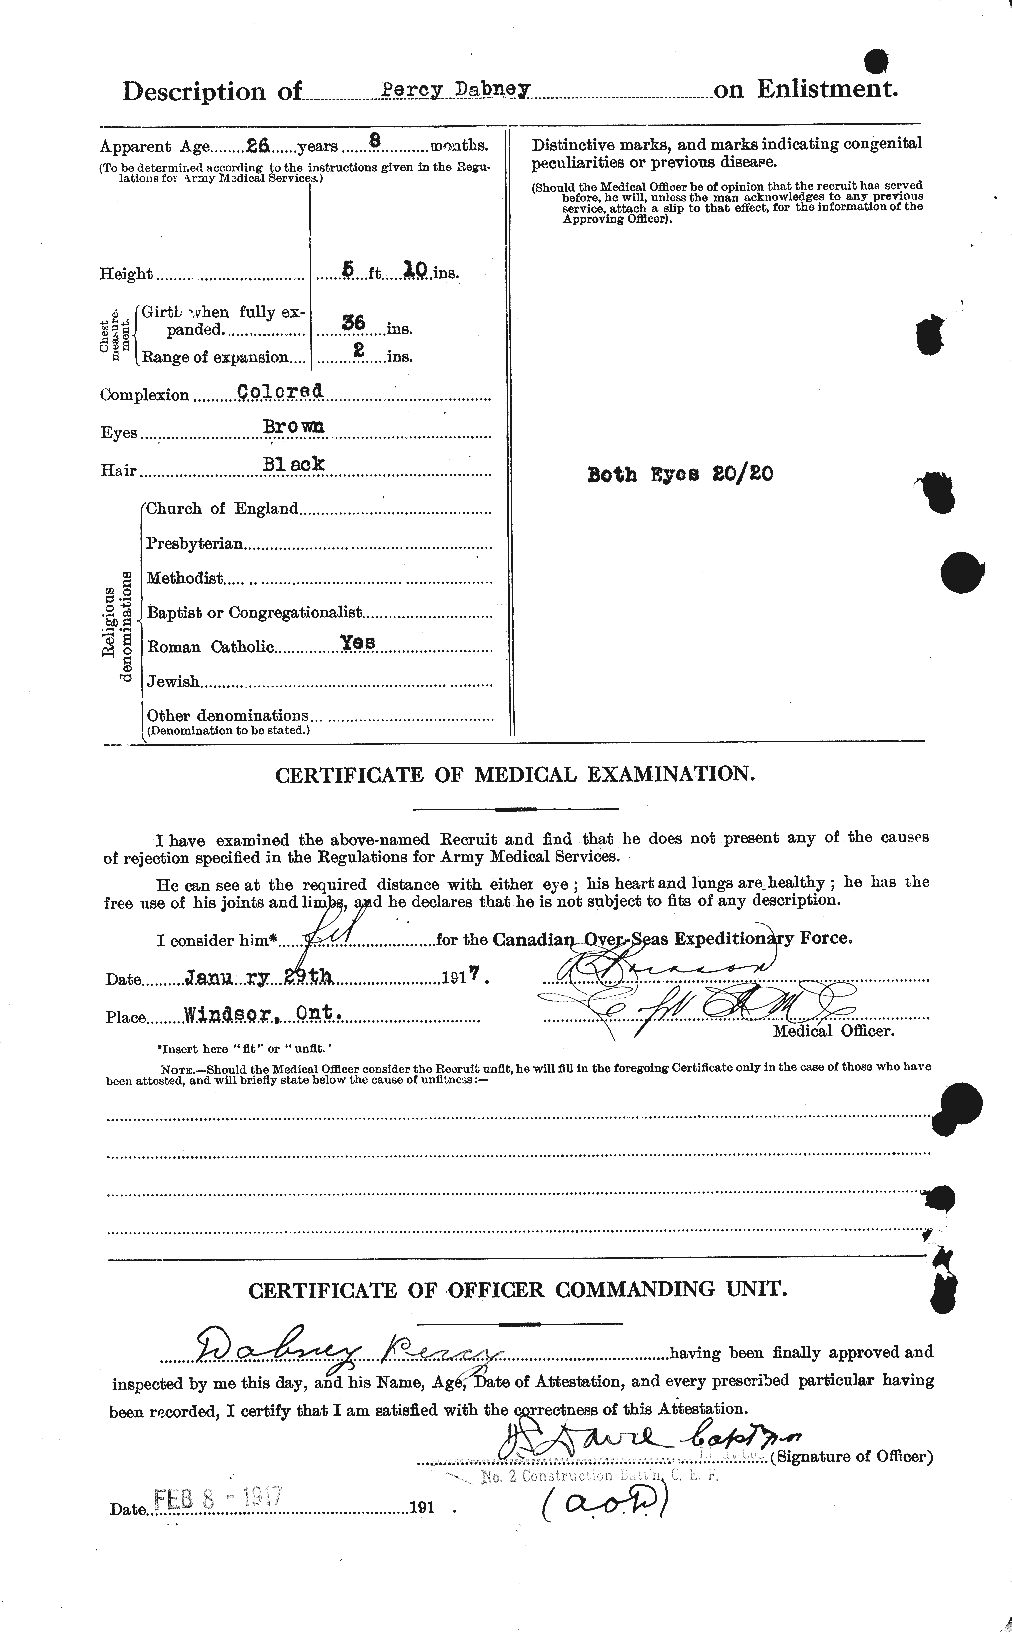 Dossiers du Personnel de la Première Guerre mondiale - CEC 275163b